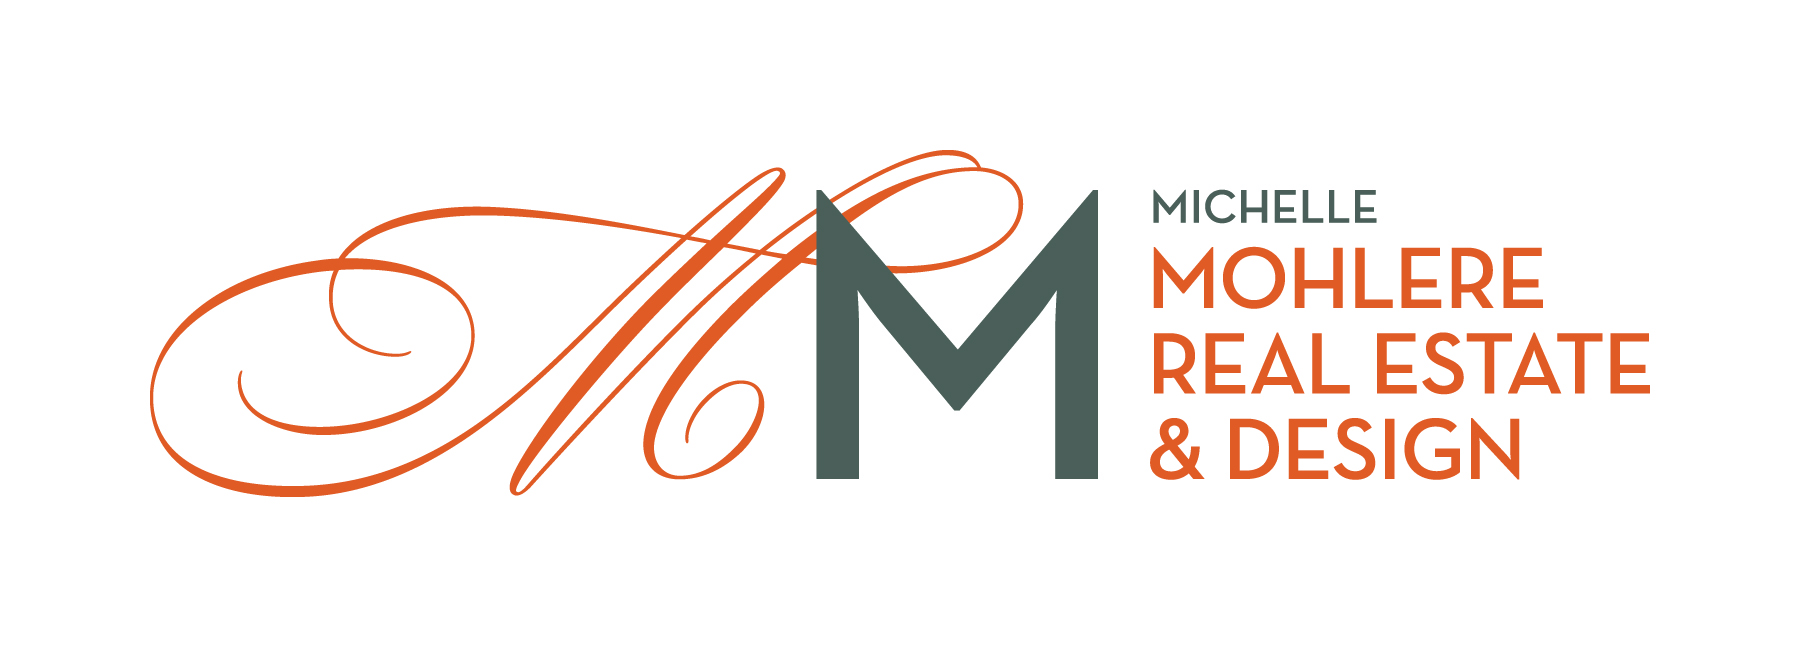 Michelle Mohlere Interior Color & Design logo